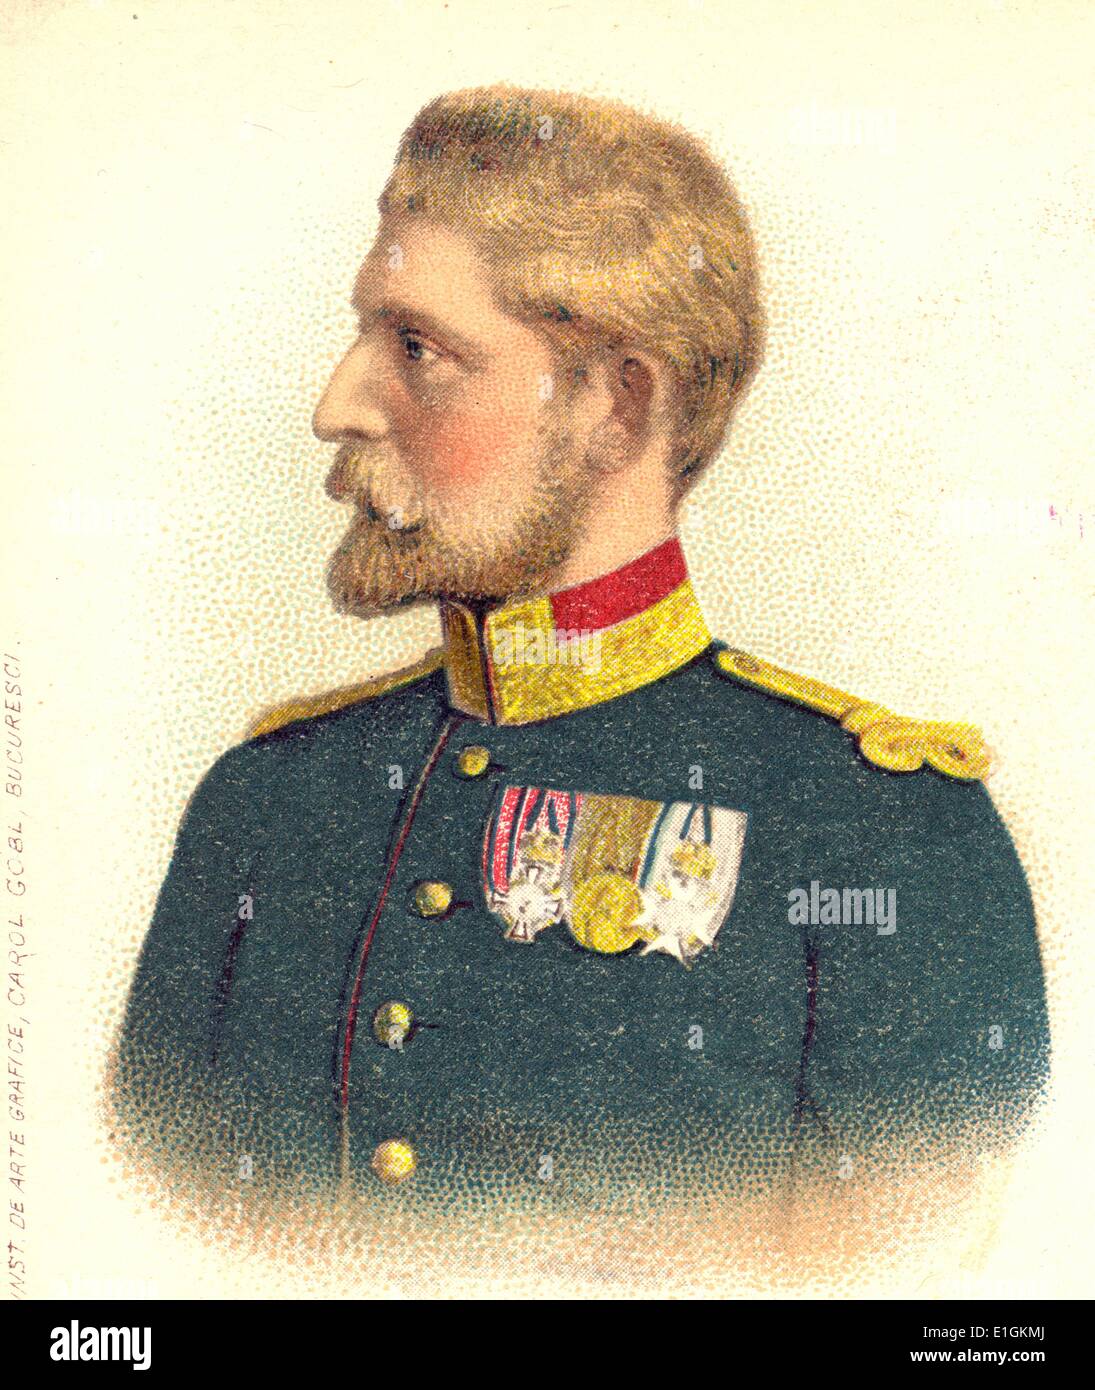 Ferdinando I (Ferdinando Viktor Albert Meinrad; 24 Agosto 1865 - 20 luglio 1927) era il re dei rumeni dal 10 ottobre 1914 fino alla sua morte nel 1927. Foto Stock